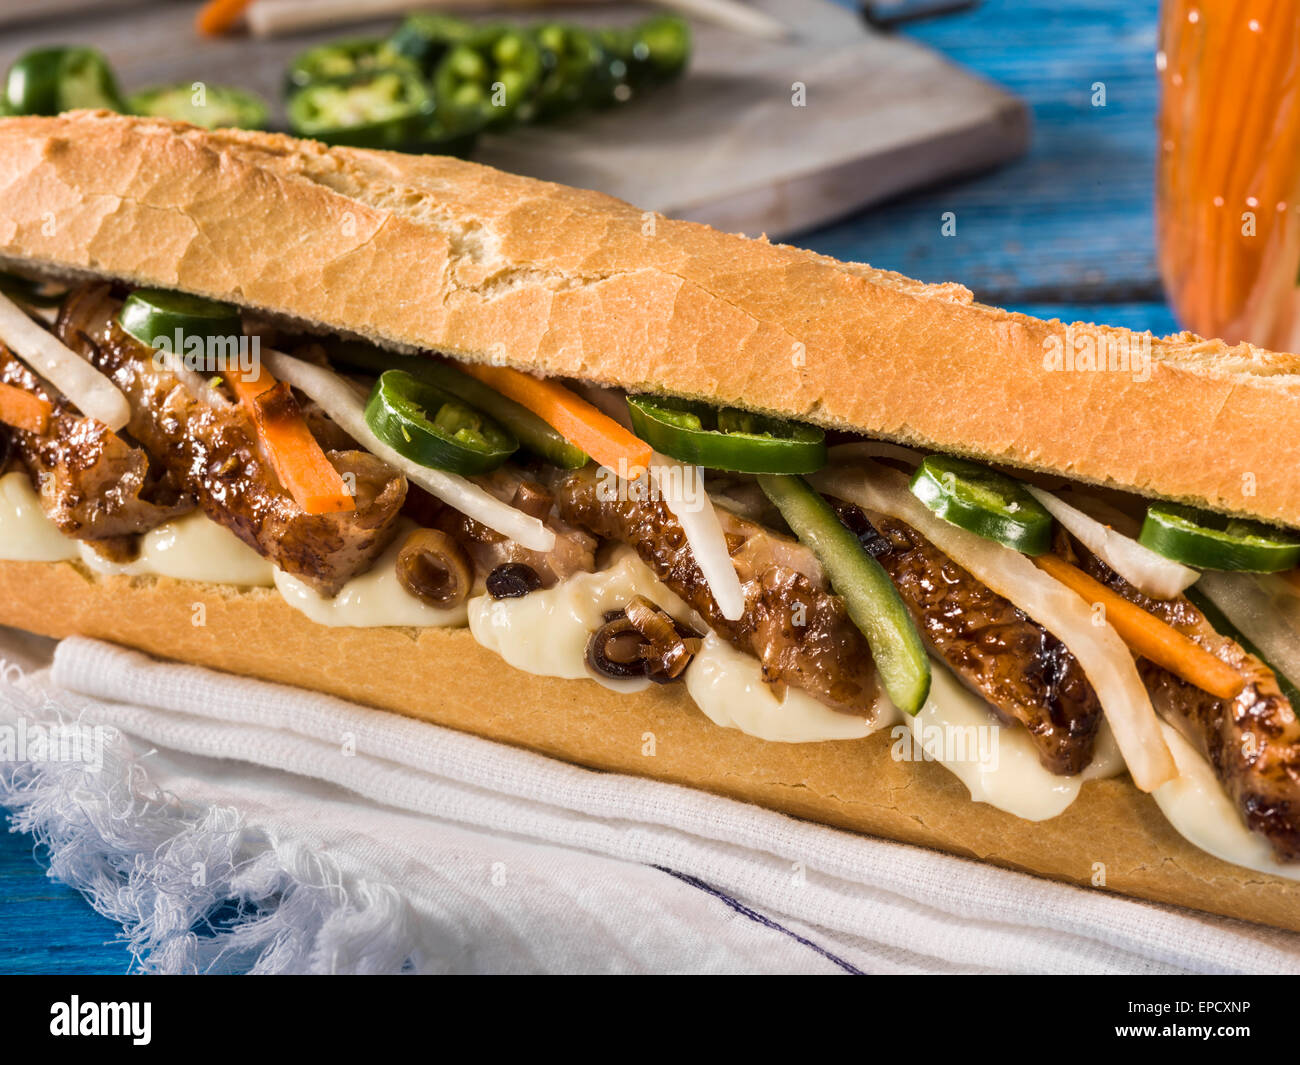 Banh mi chicken sandwich Stock Photo